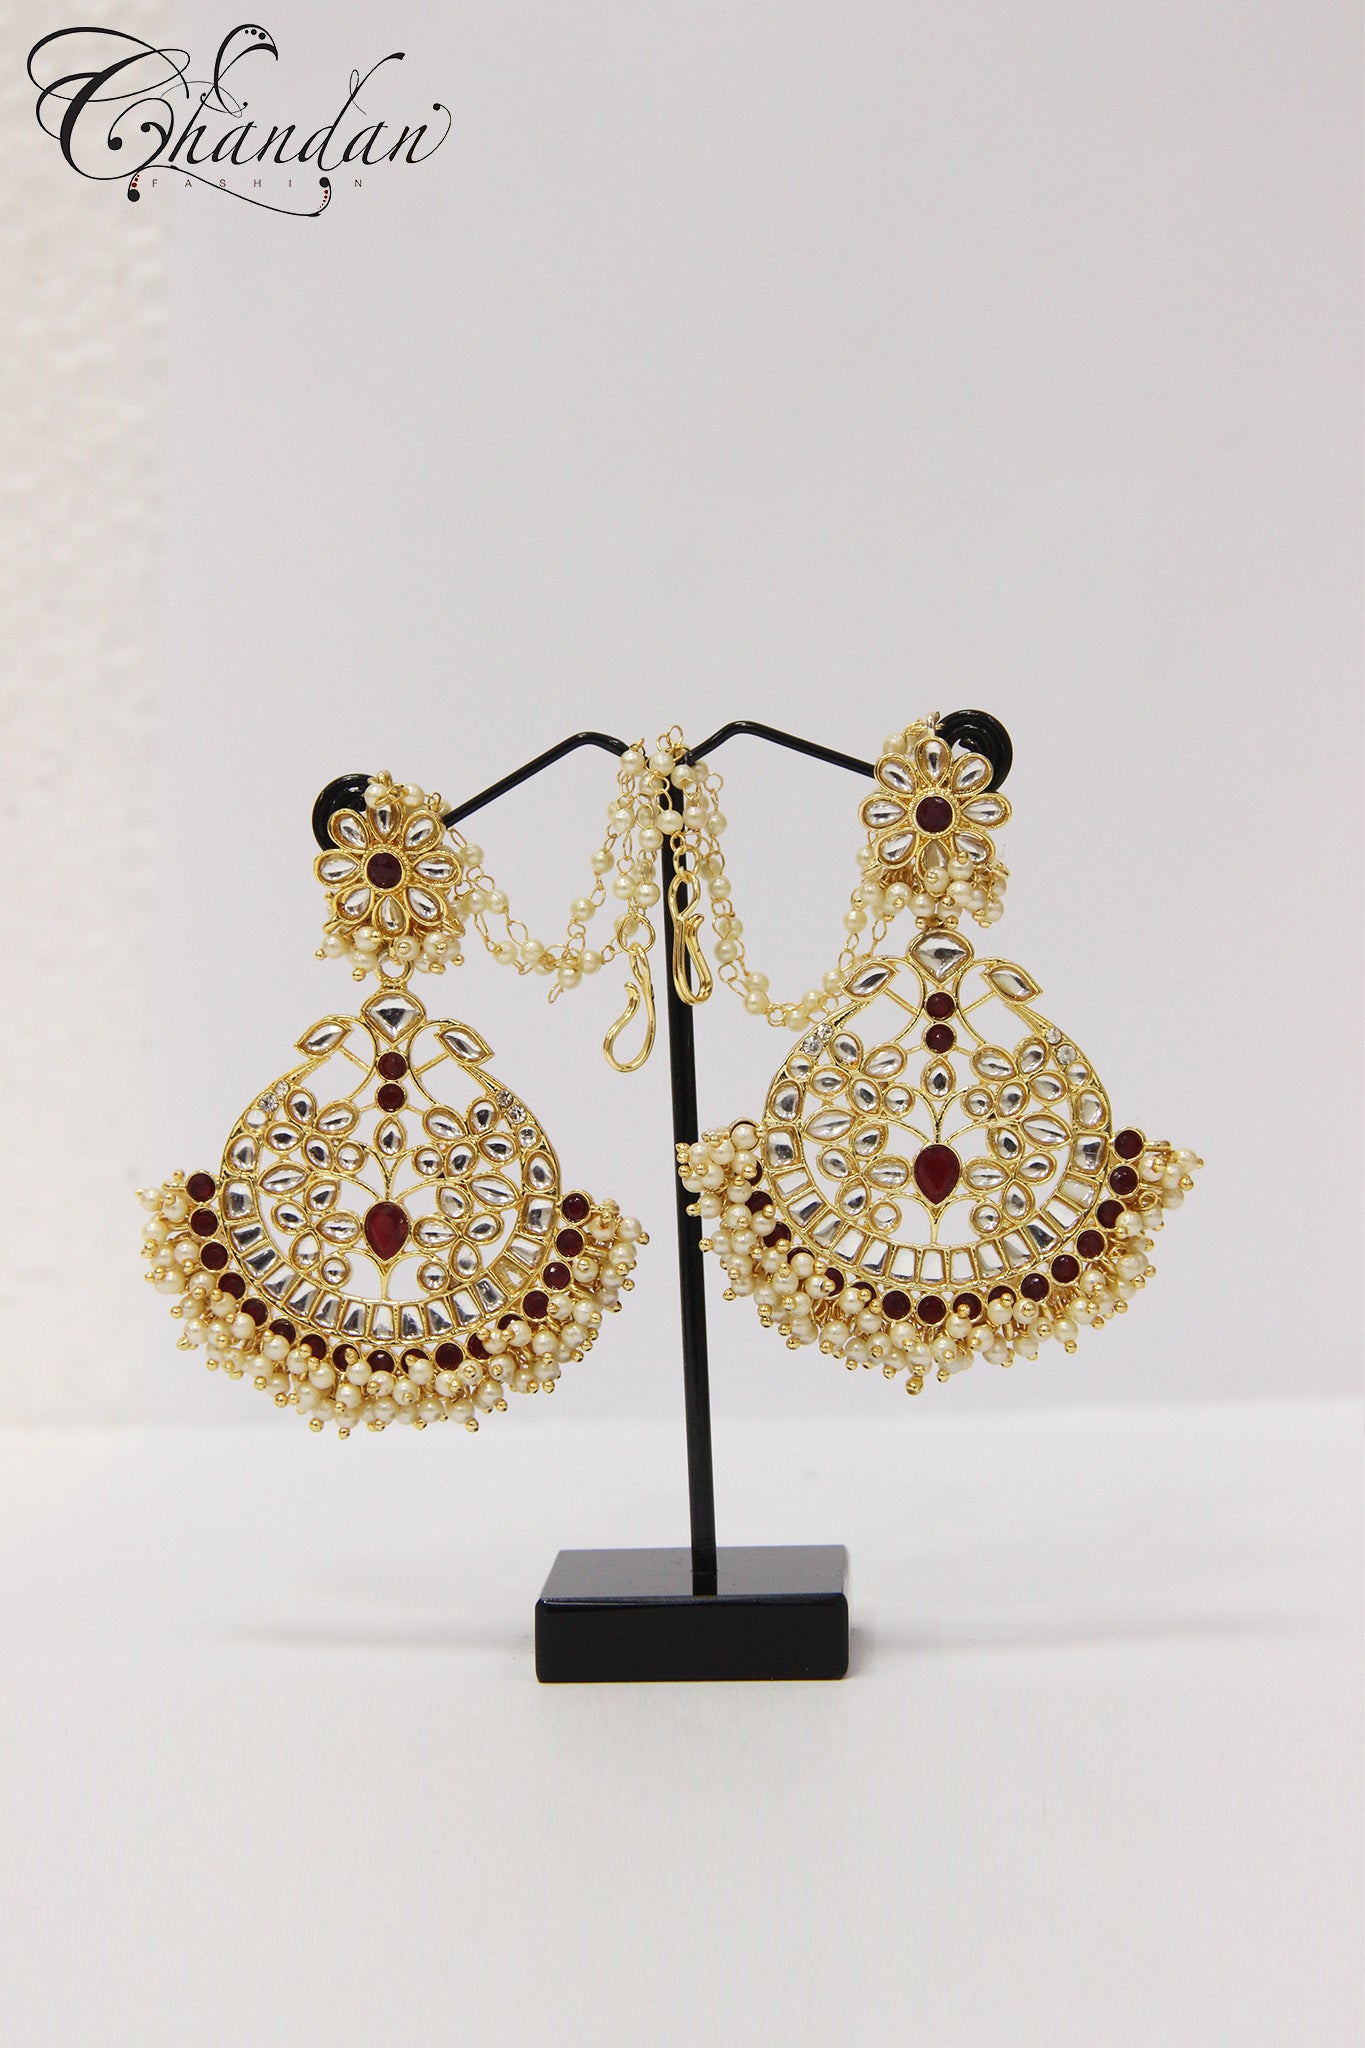 Chandbala earrings